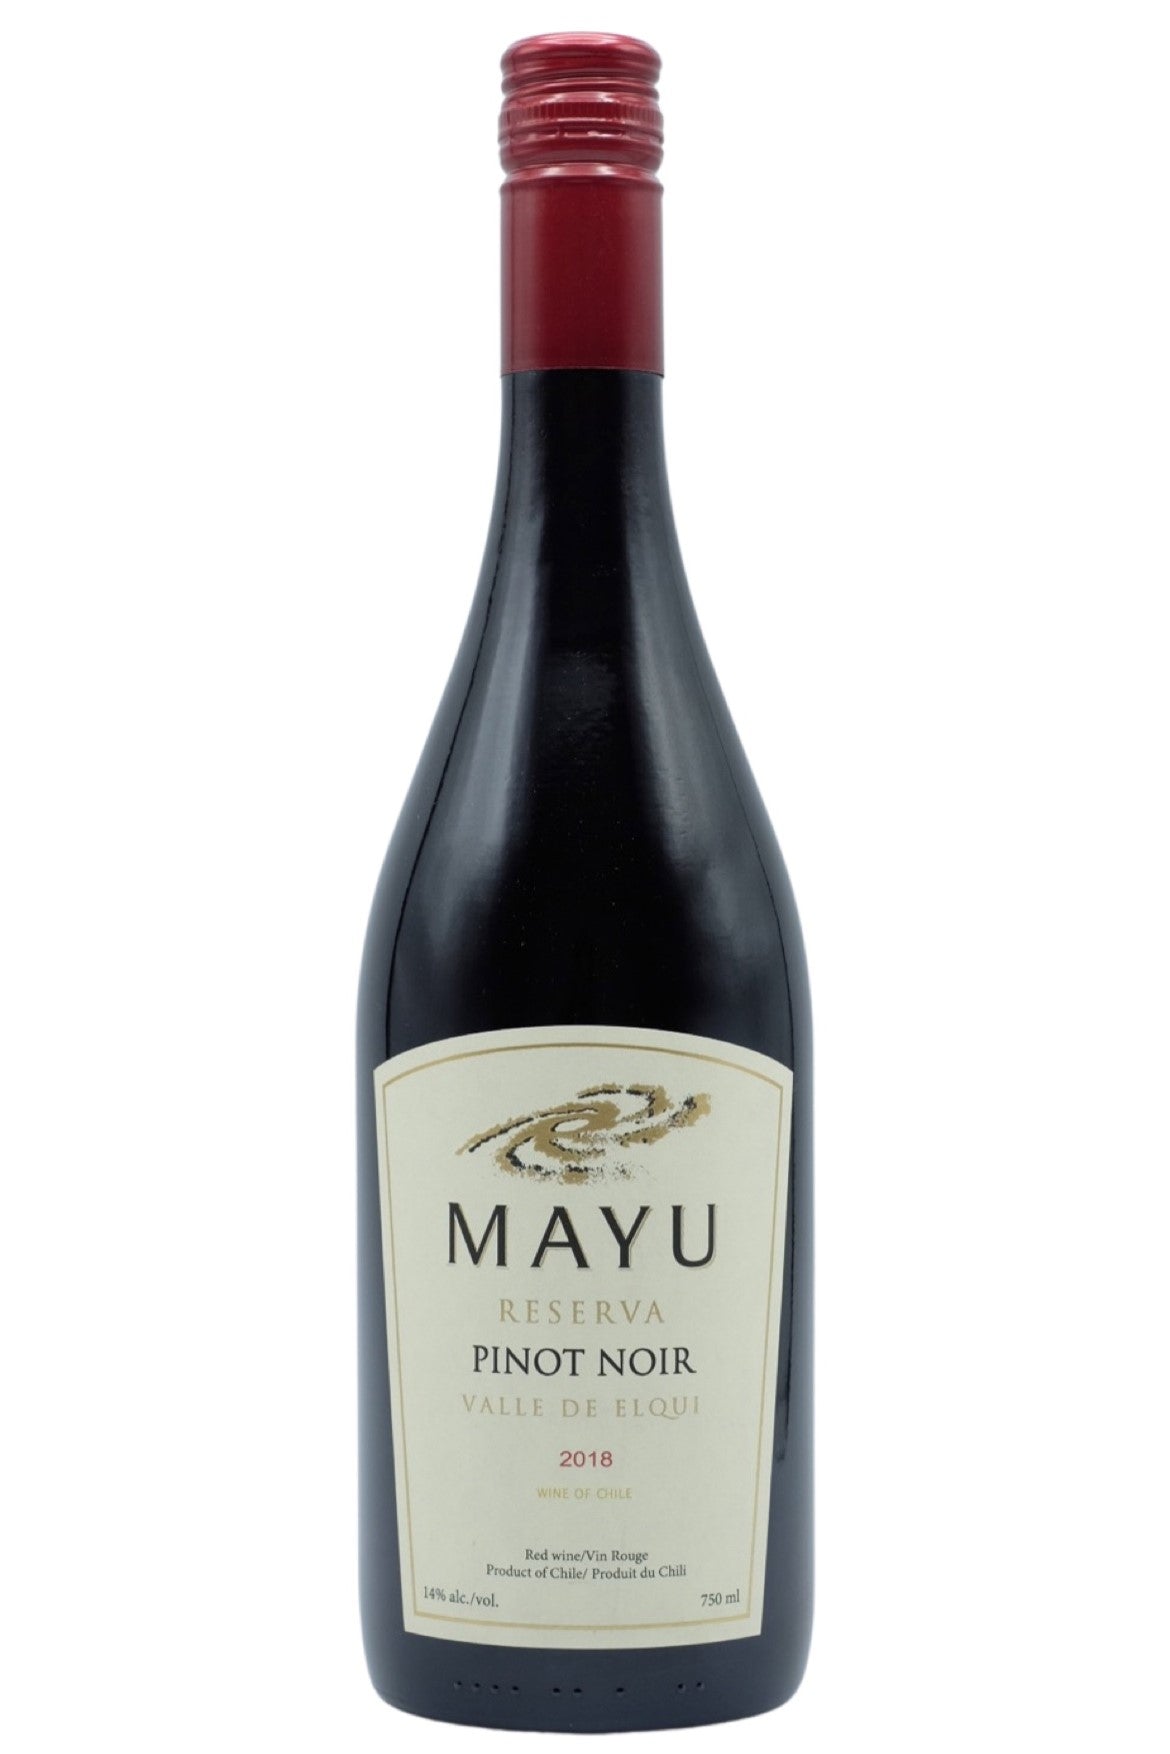 Mayu Pinot Noir